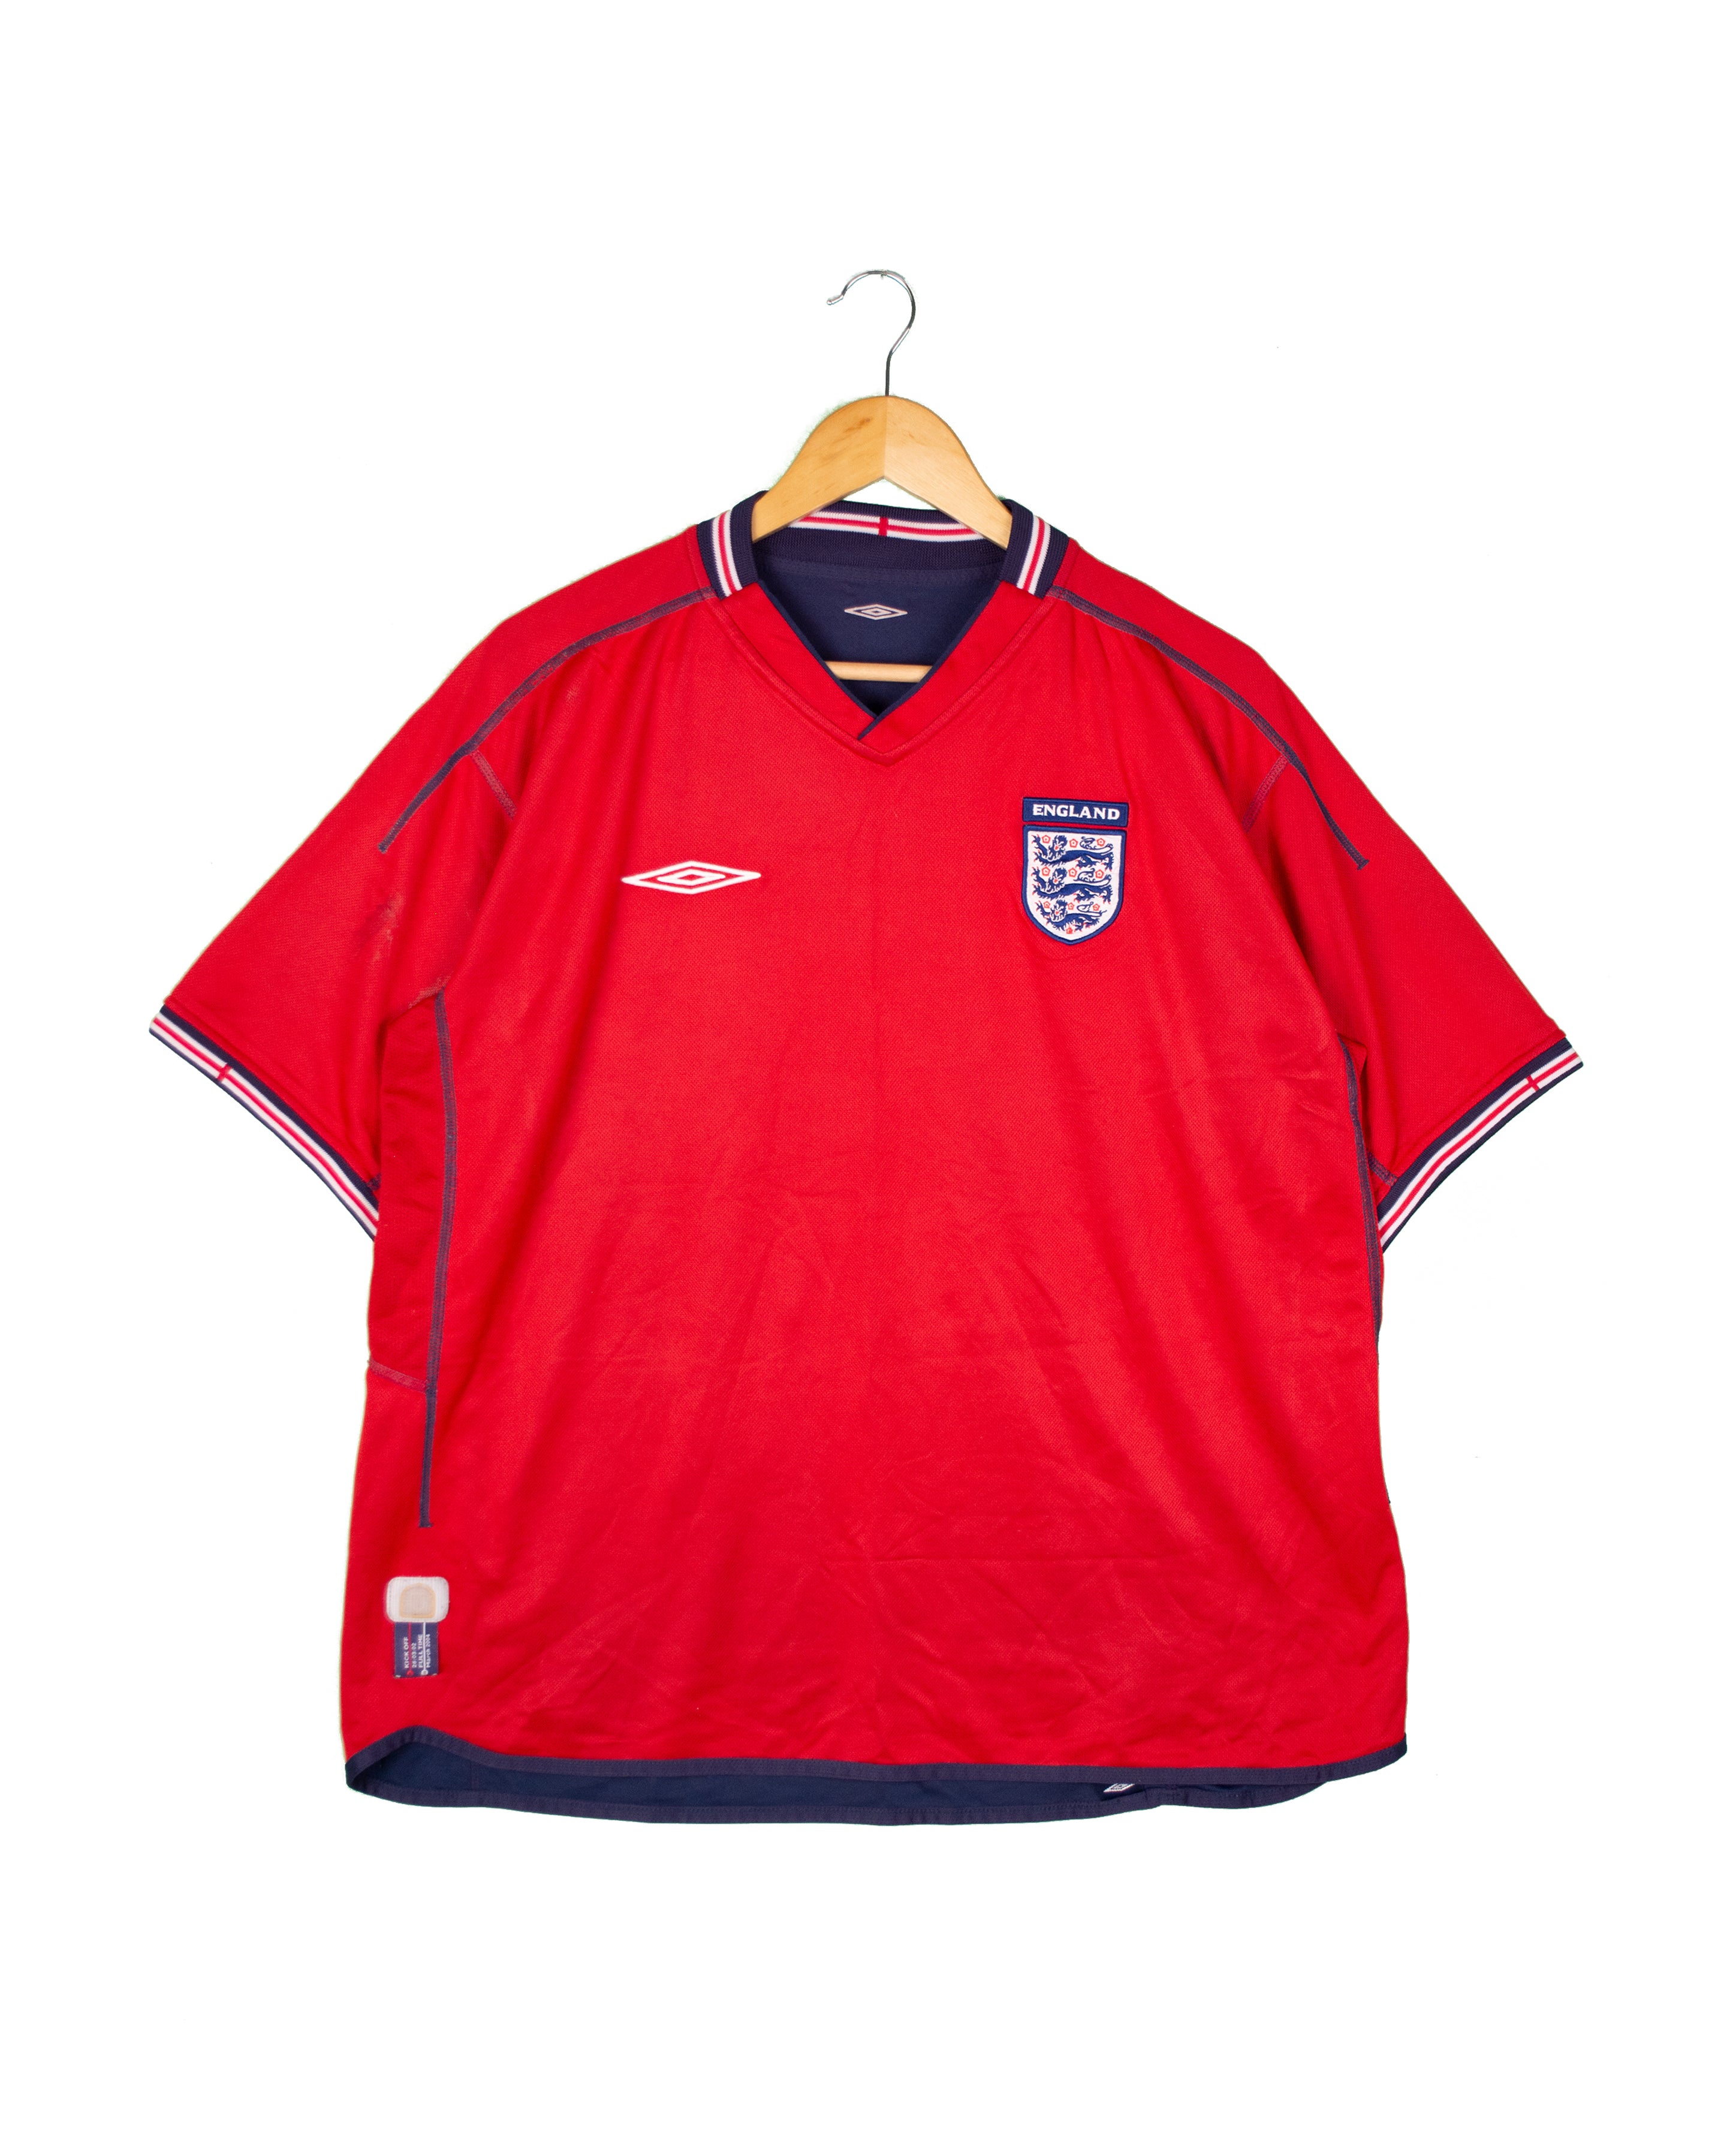 England 2002 Away Shirt - XL - #1557